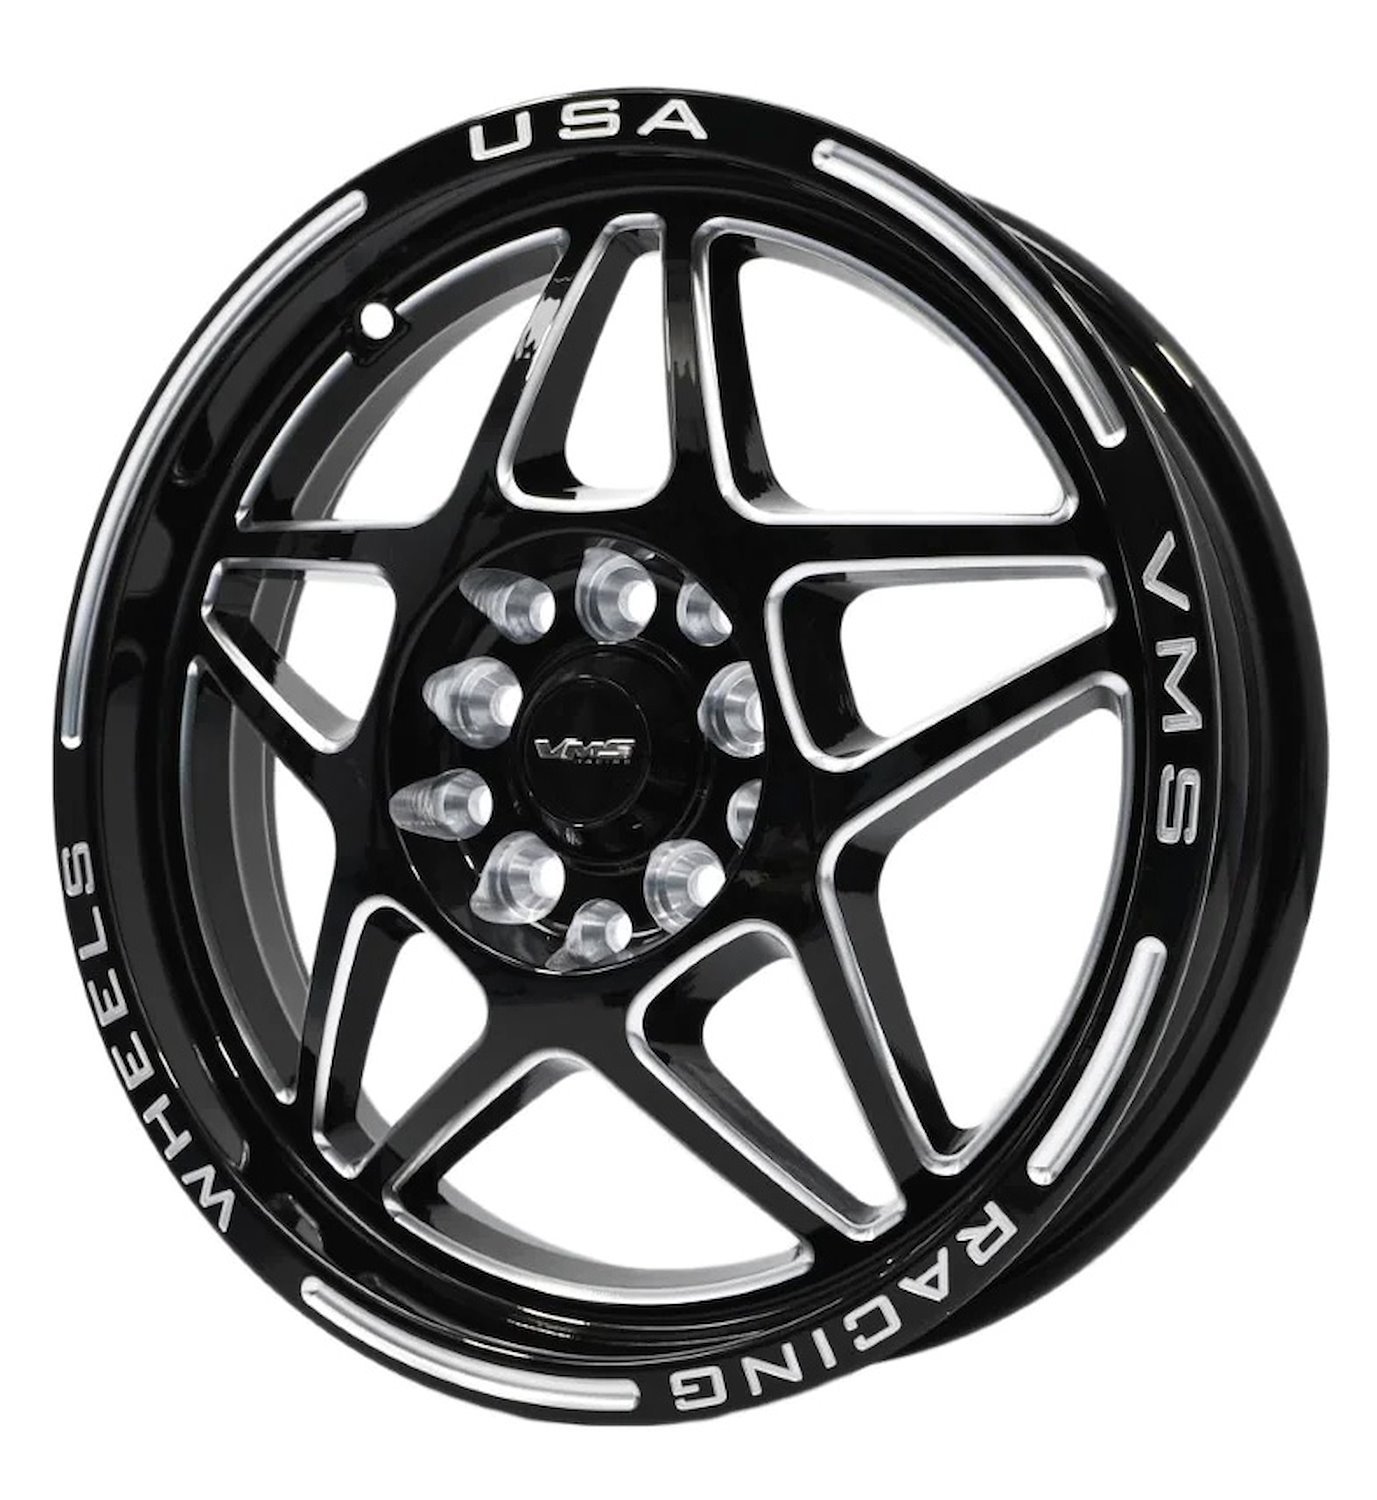 VWDA004 Delta Wheel, Size: 15" x 3.5", Bolt Pattern: 5 x 100 mm & 5 x 4 1/2" (114.3 mm) [Finish: Gloss Black Milled]